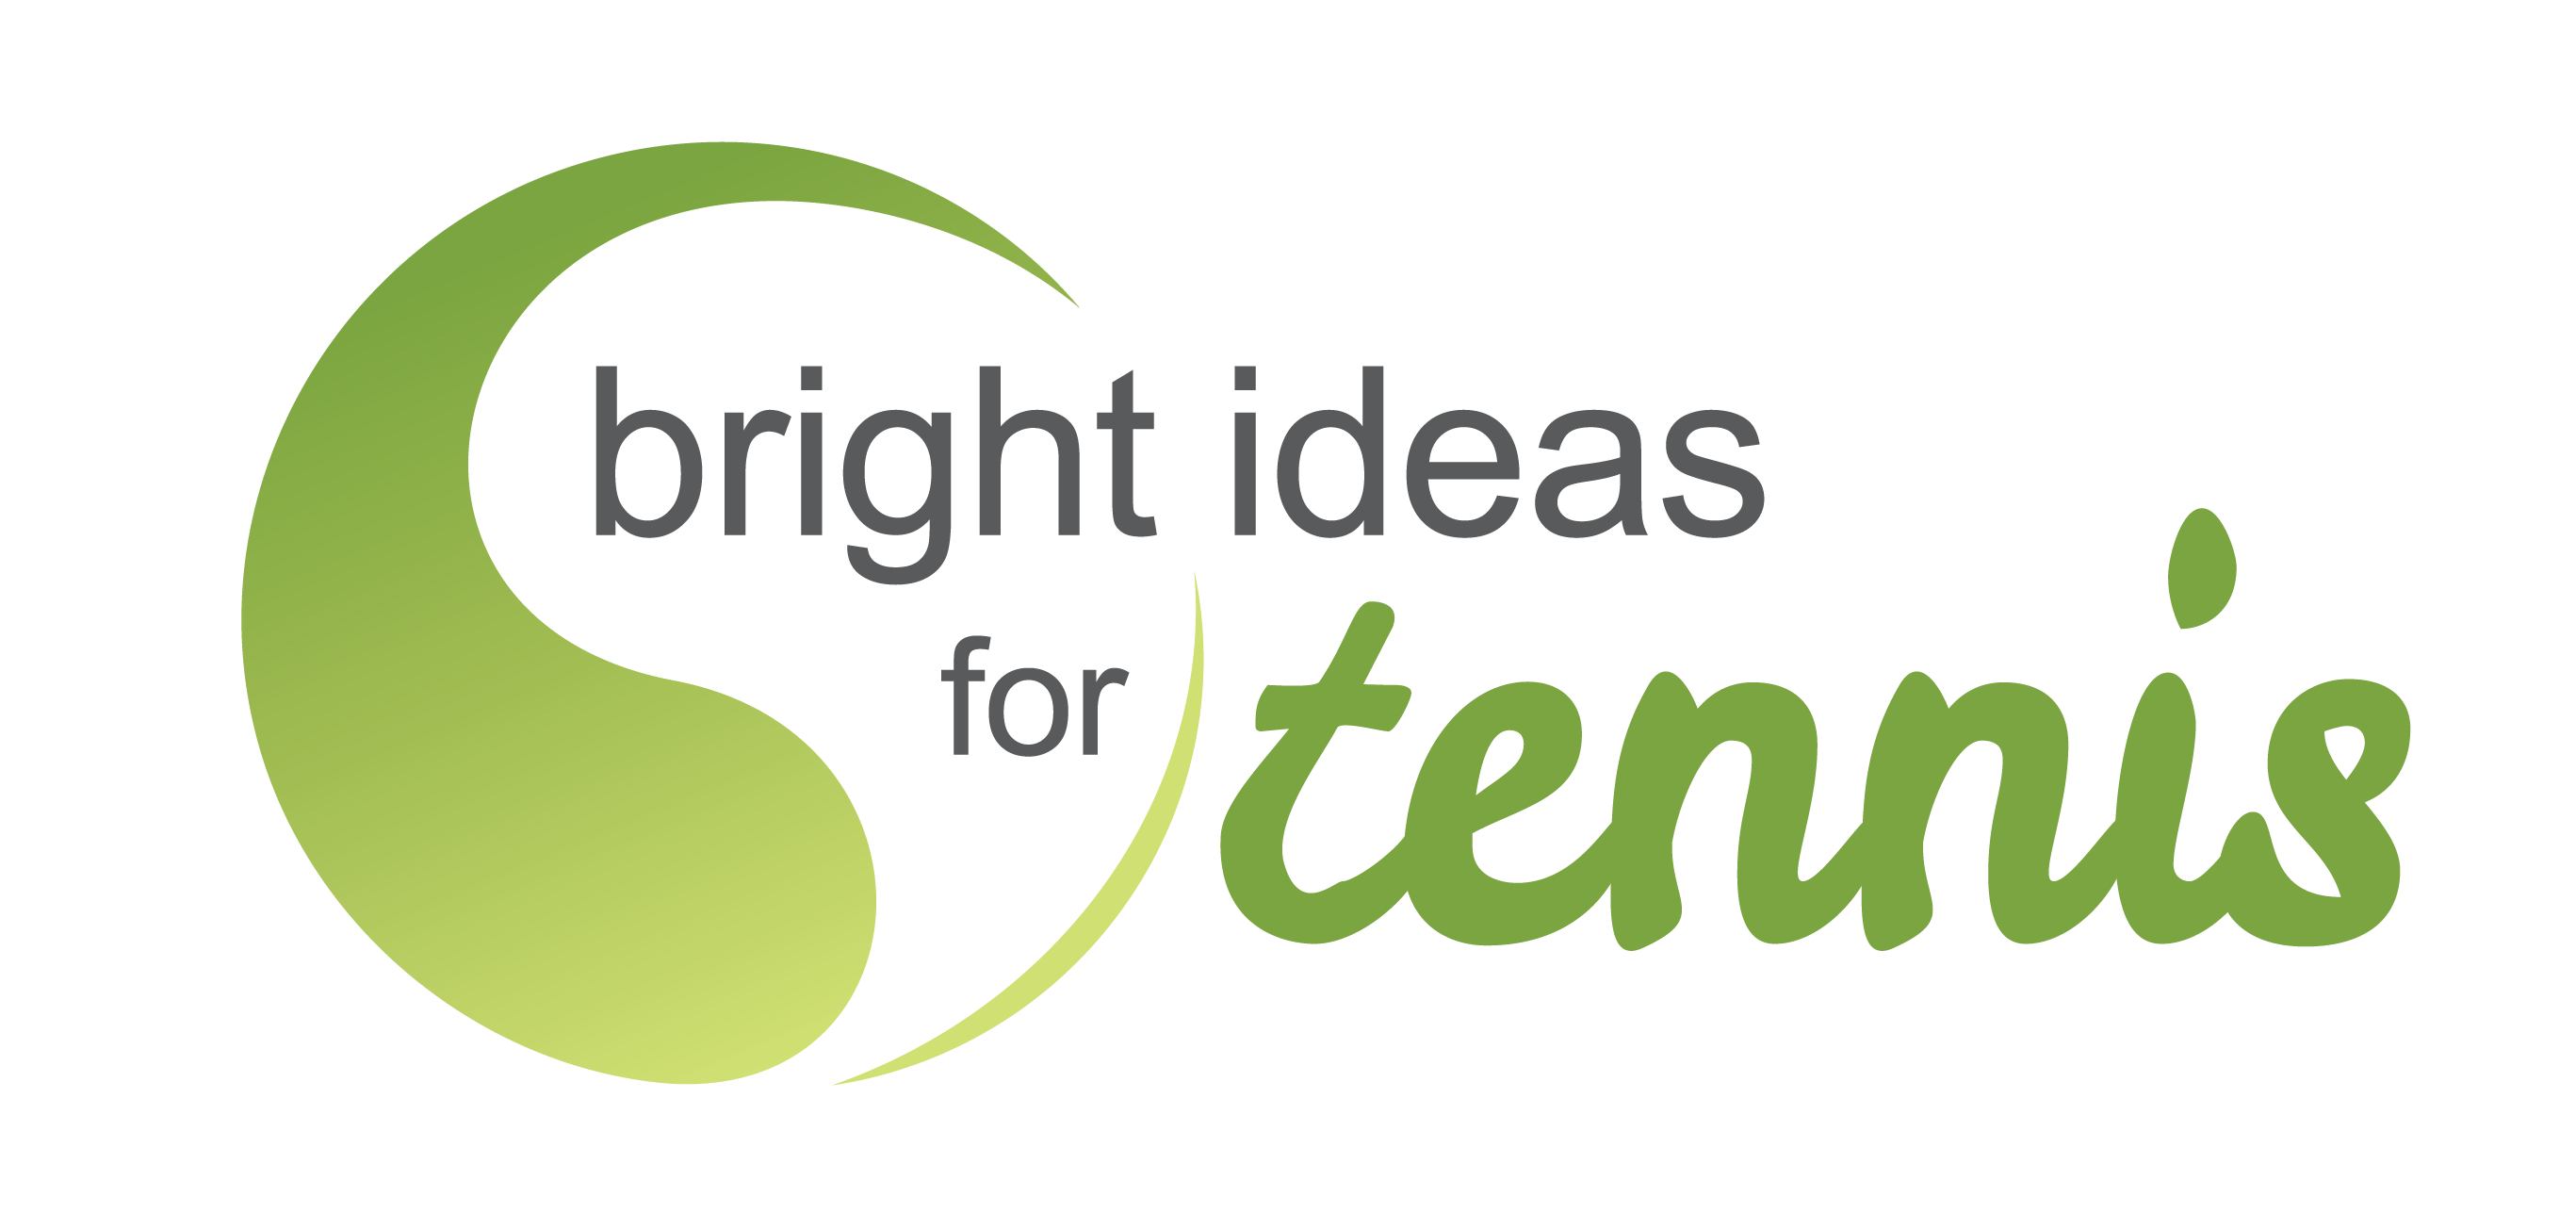 Tennis Logo - Bright Ideas for Tennis